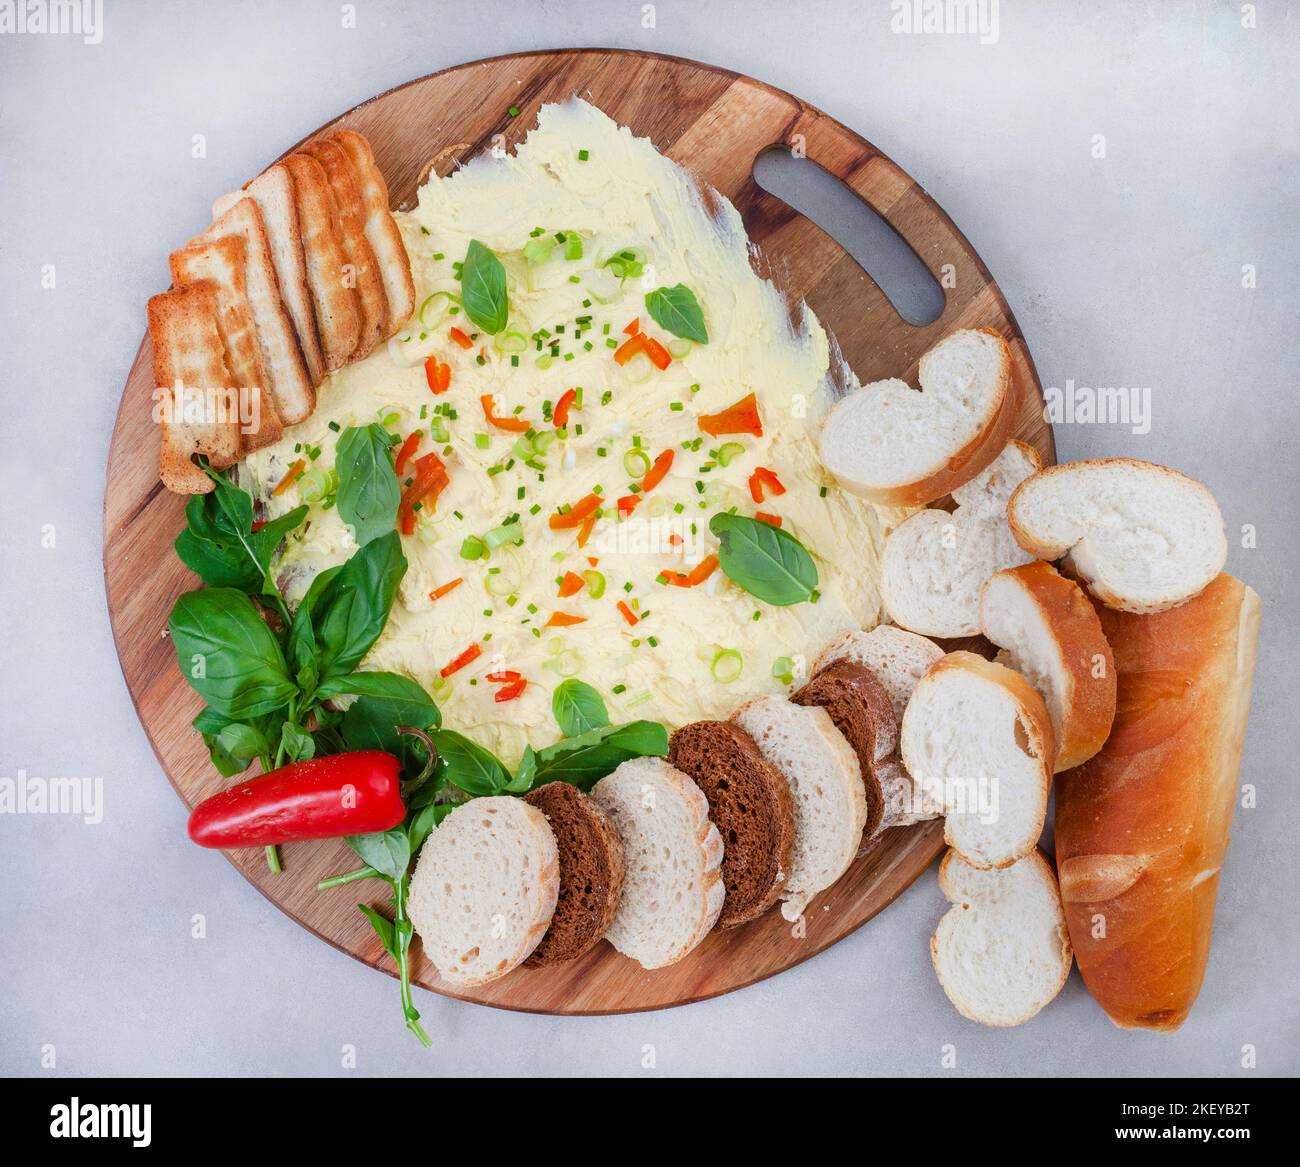 La planche à beurre, la nouvelle façon tendance de servir votre pain et vos entrées. Beurre au jalapeno, oignon de printemps, ciboulette et autres herbes, servi avec sélection o Banque D'Images